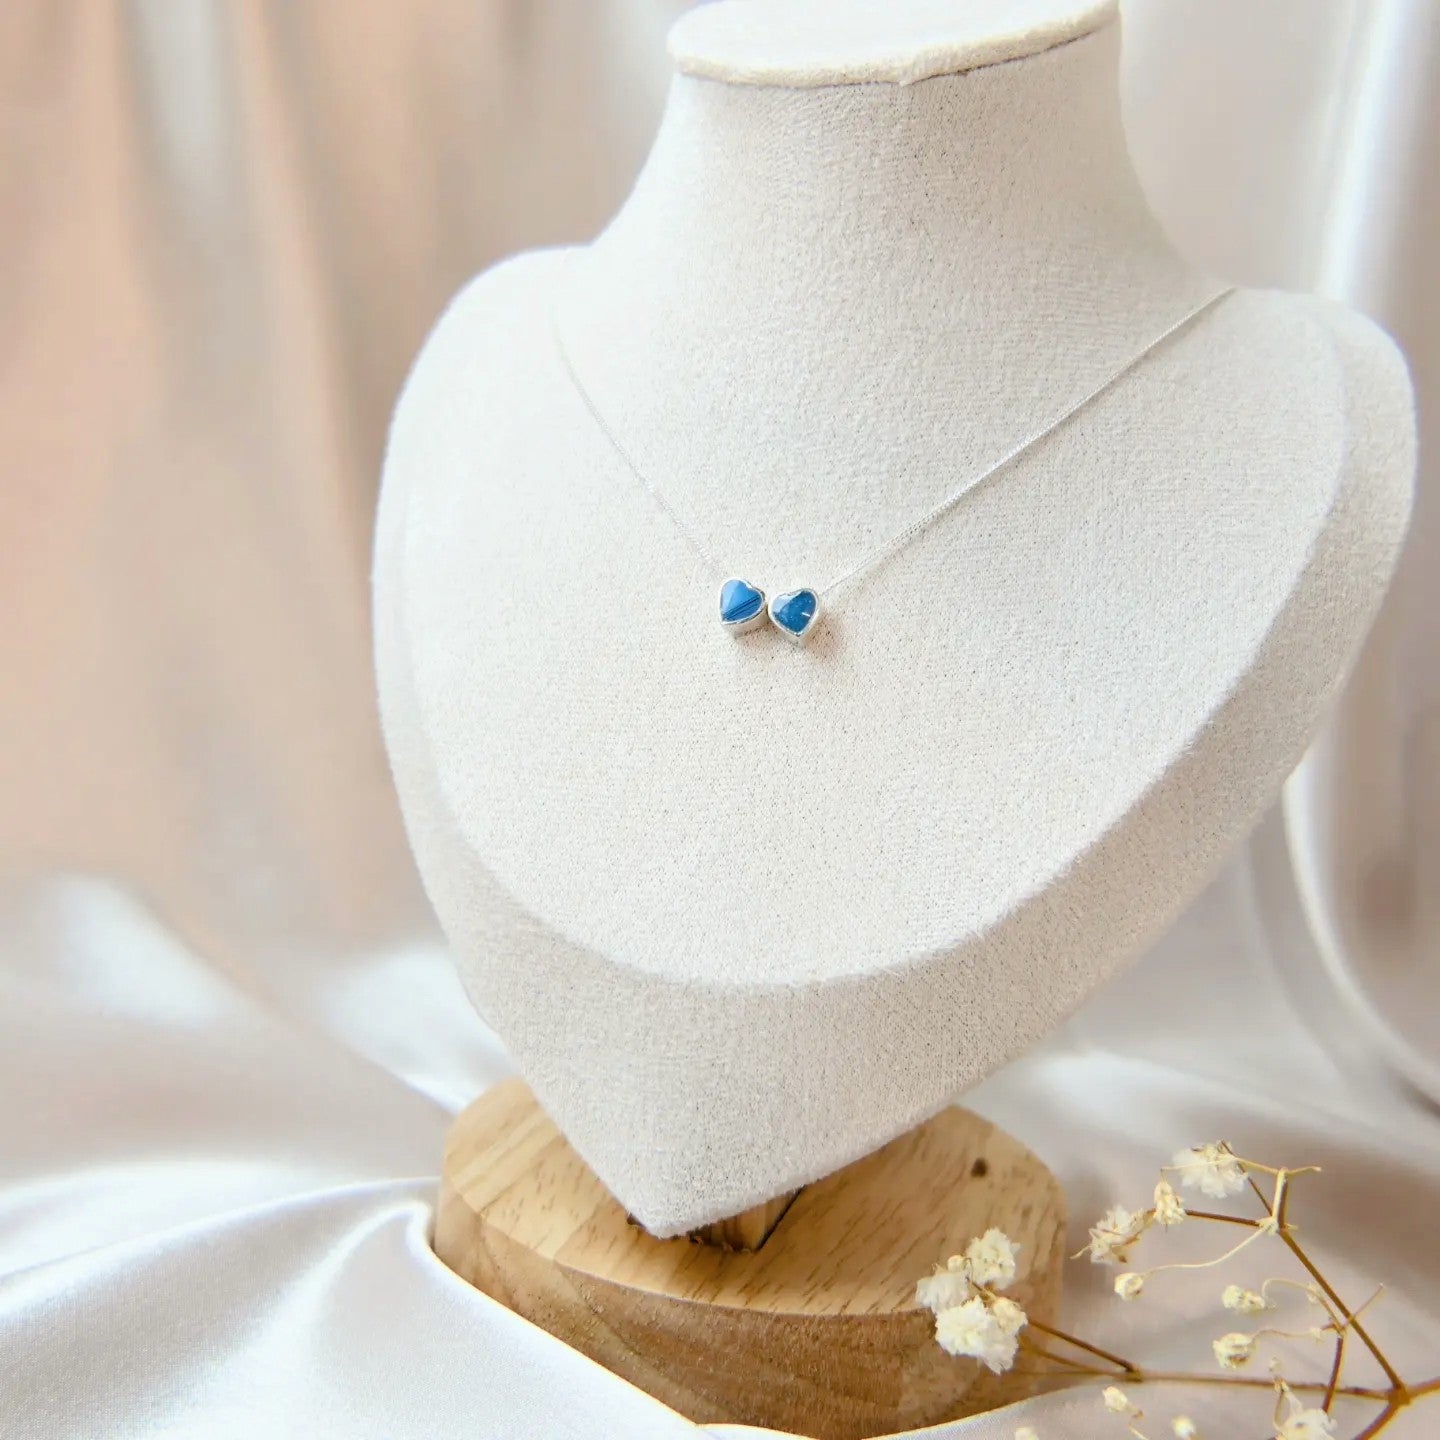 Buy Breastmilk Jewellery in Australia – Beyond Love Creations